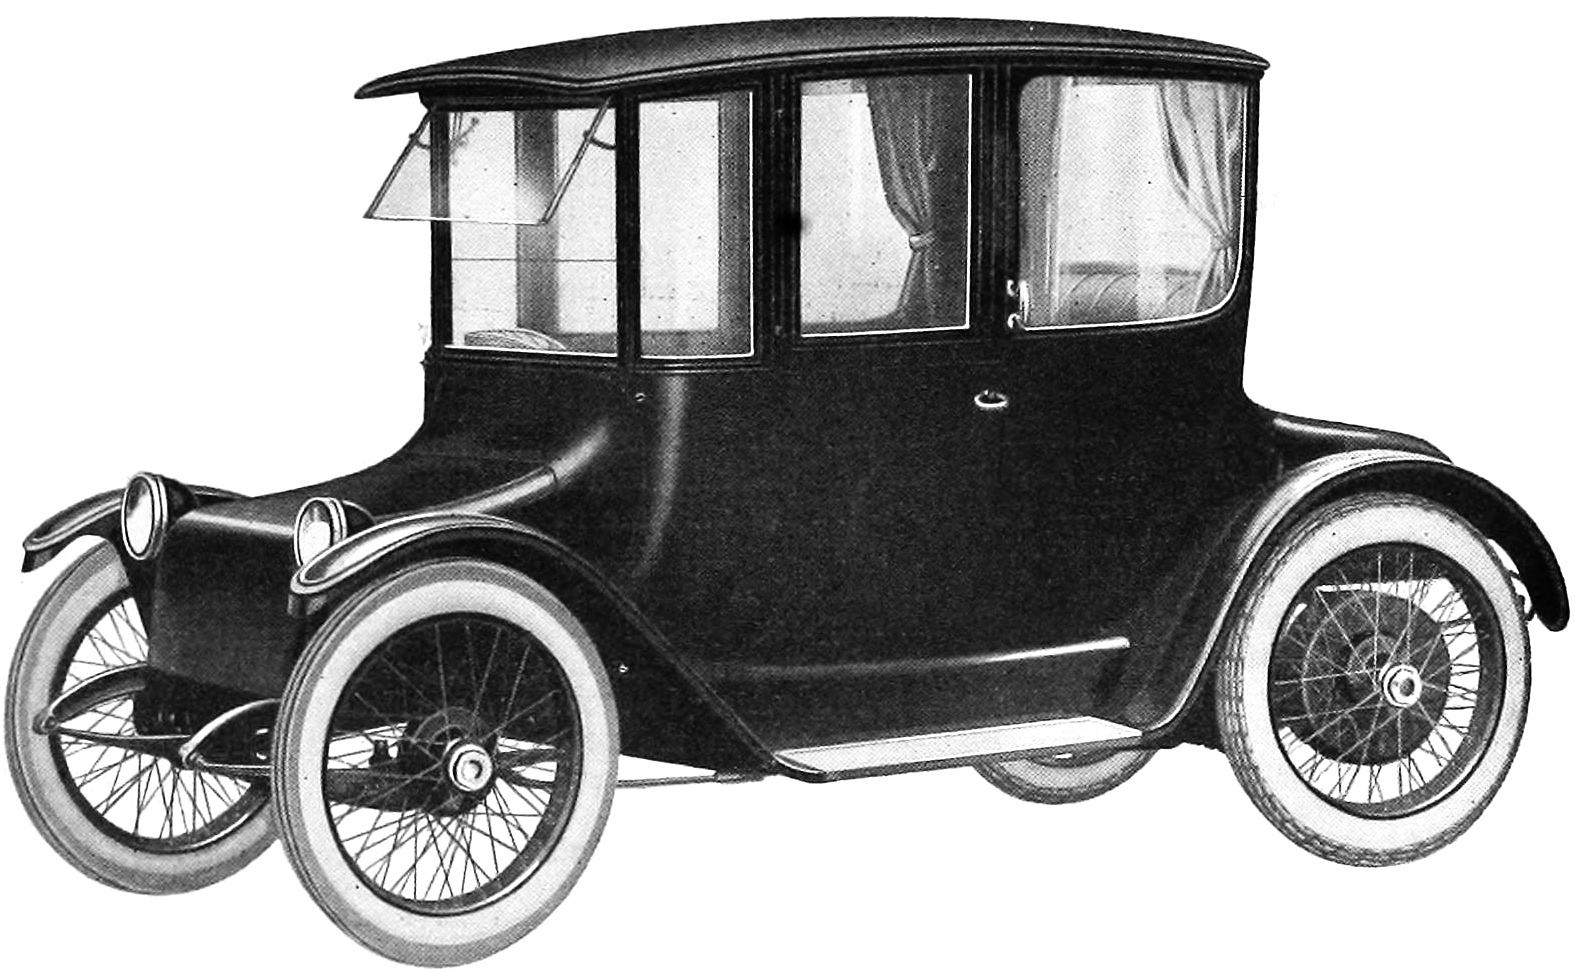 Detroit Electric 1917 model